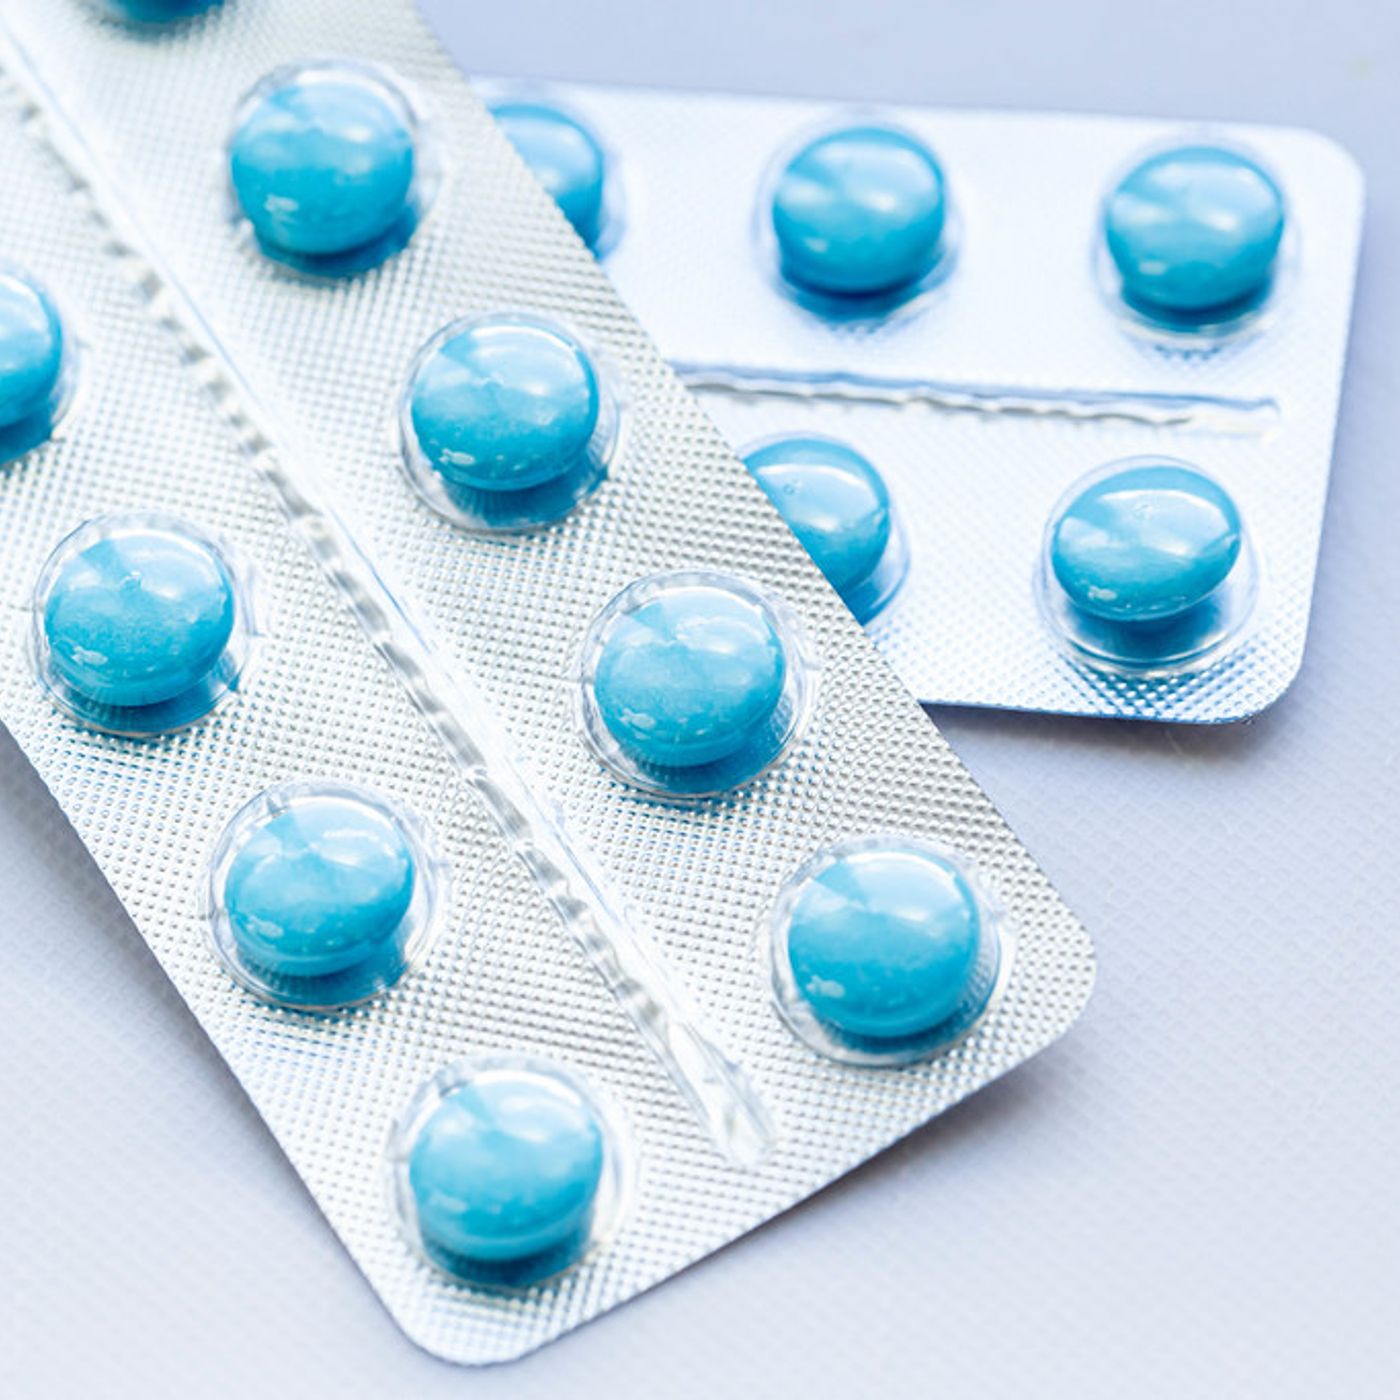 La píldora anticonceptiva | Mentes Covalentes #23